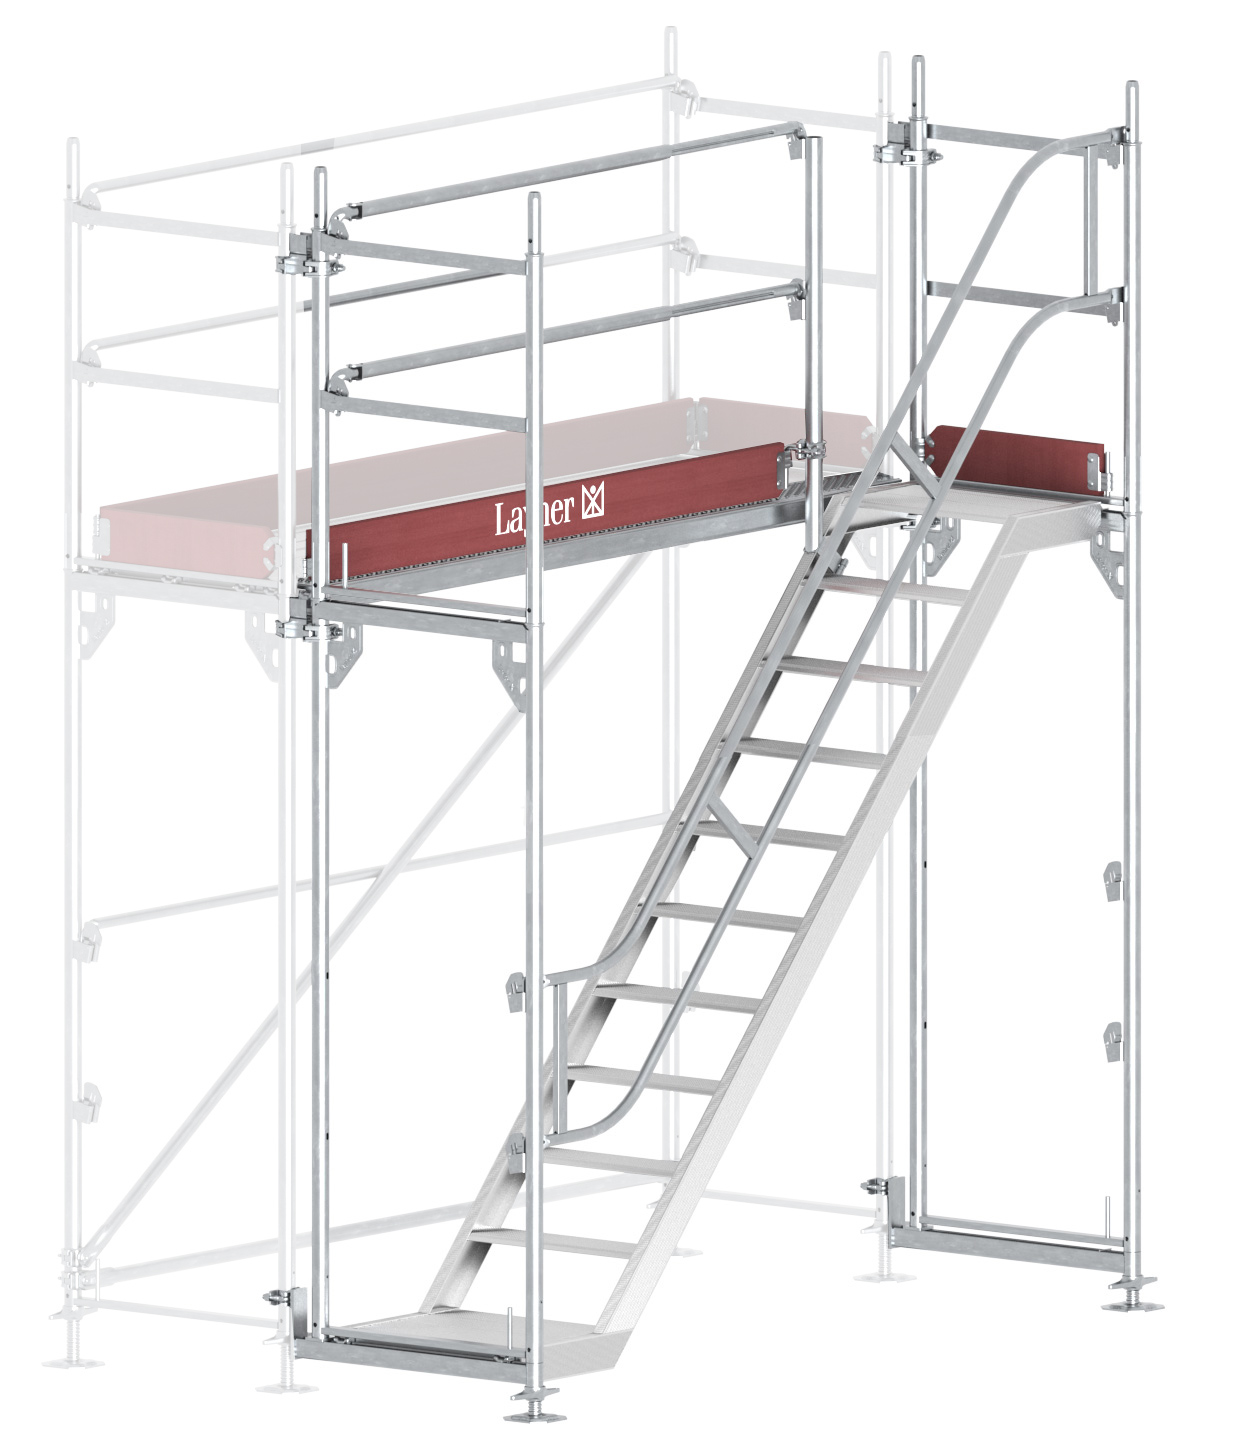 Layher Blitz Treppenturm-Vorbau Stahl - 2,57 x 2,20 m Erweiterung Treppenaufstieg nach TRBS 2121-2 für Layher Fassadengerüst (LG-1753-0200-VS) Bild-01